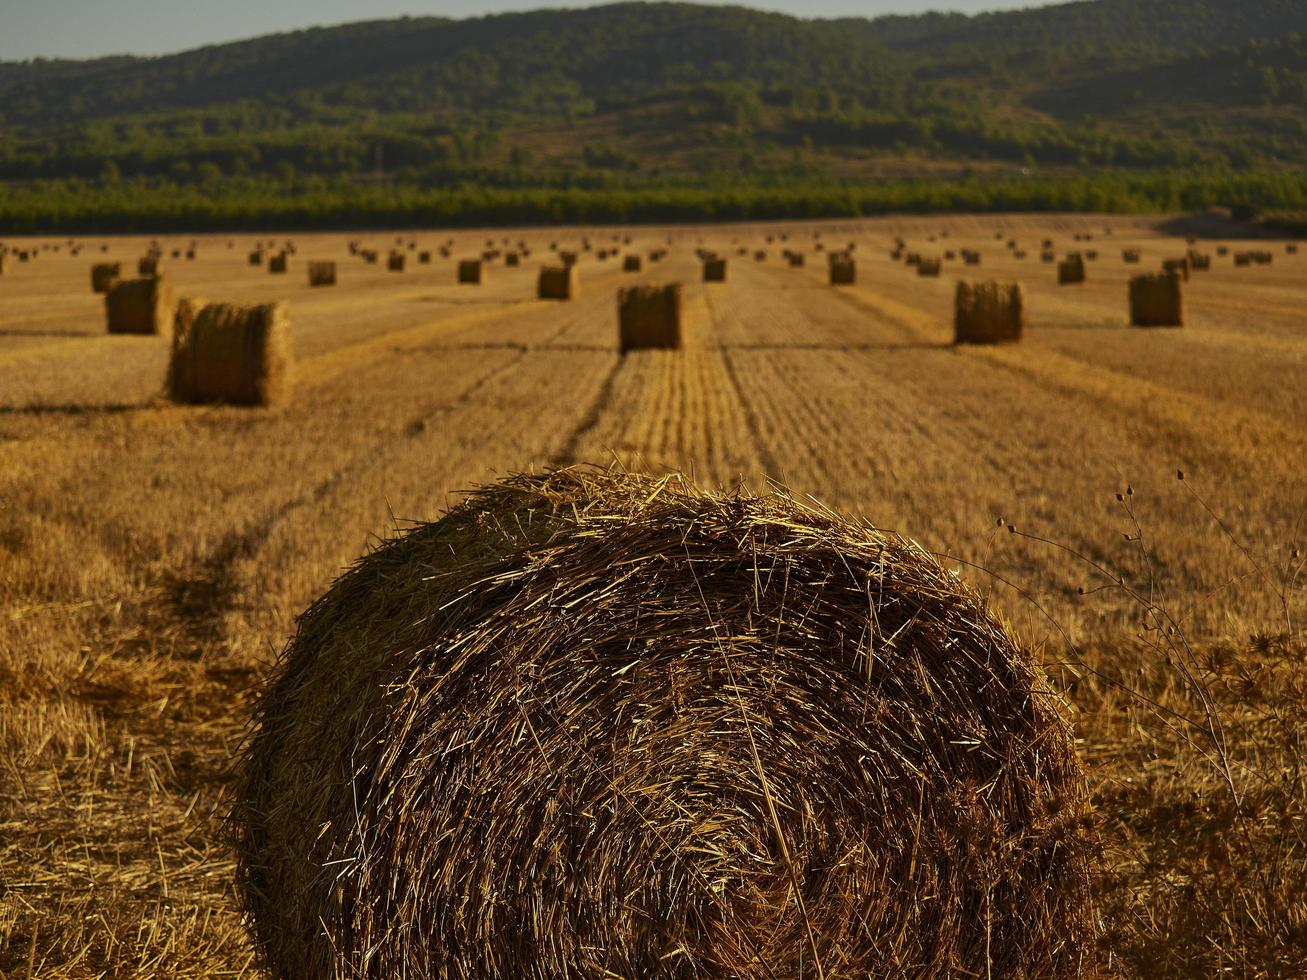 halmbalar i ett spannmålsfält tidigt på morgonen, almansa, spanien foto